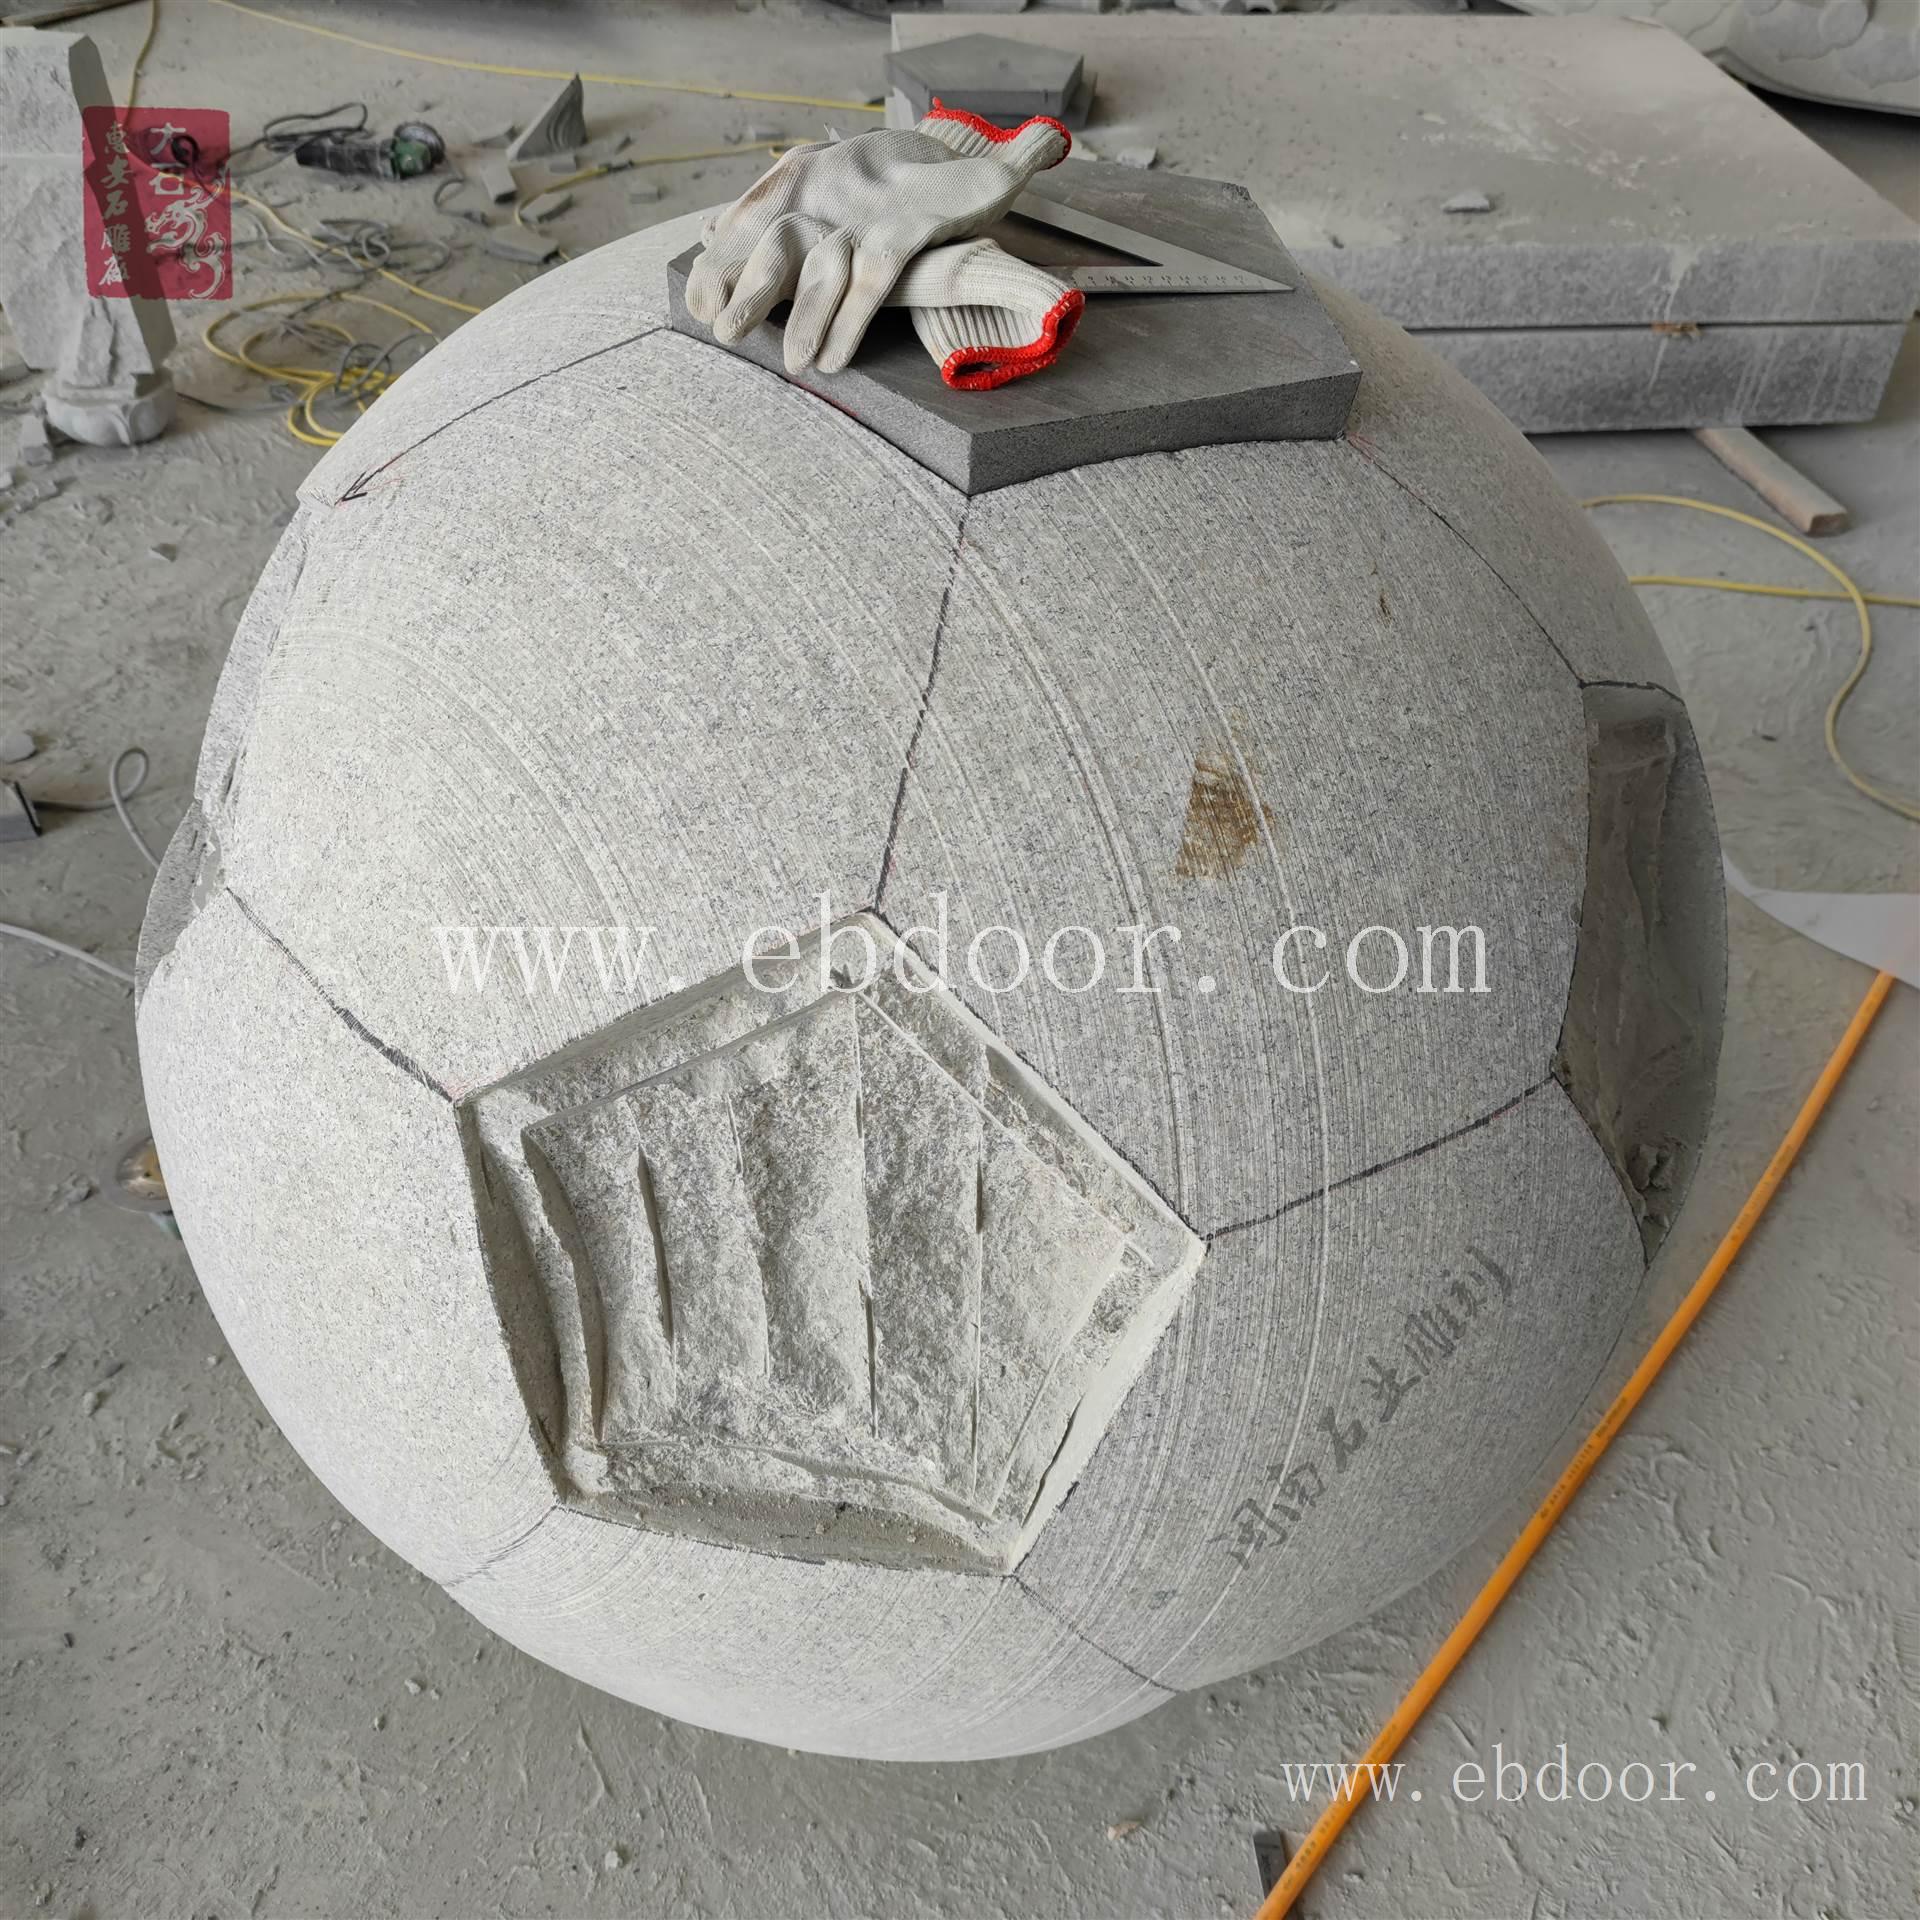 足球雕塑 校园足球石雕